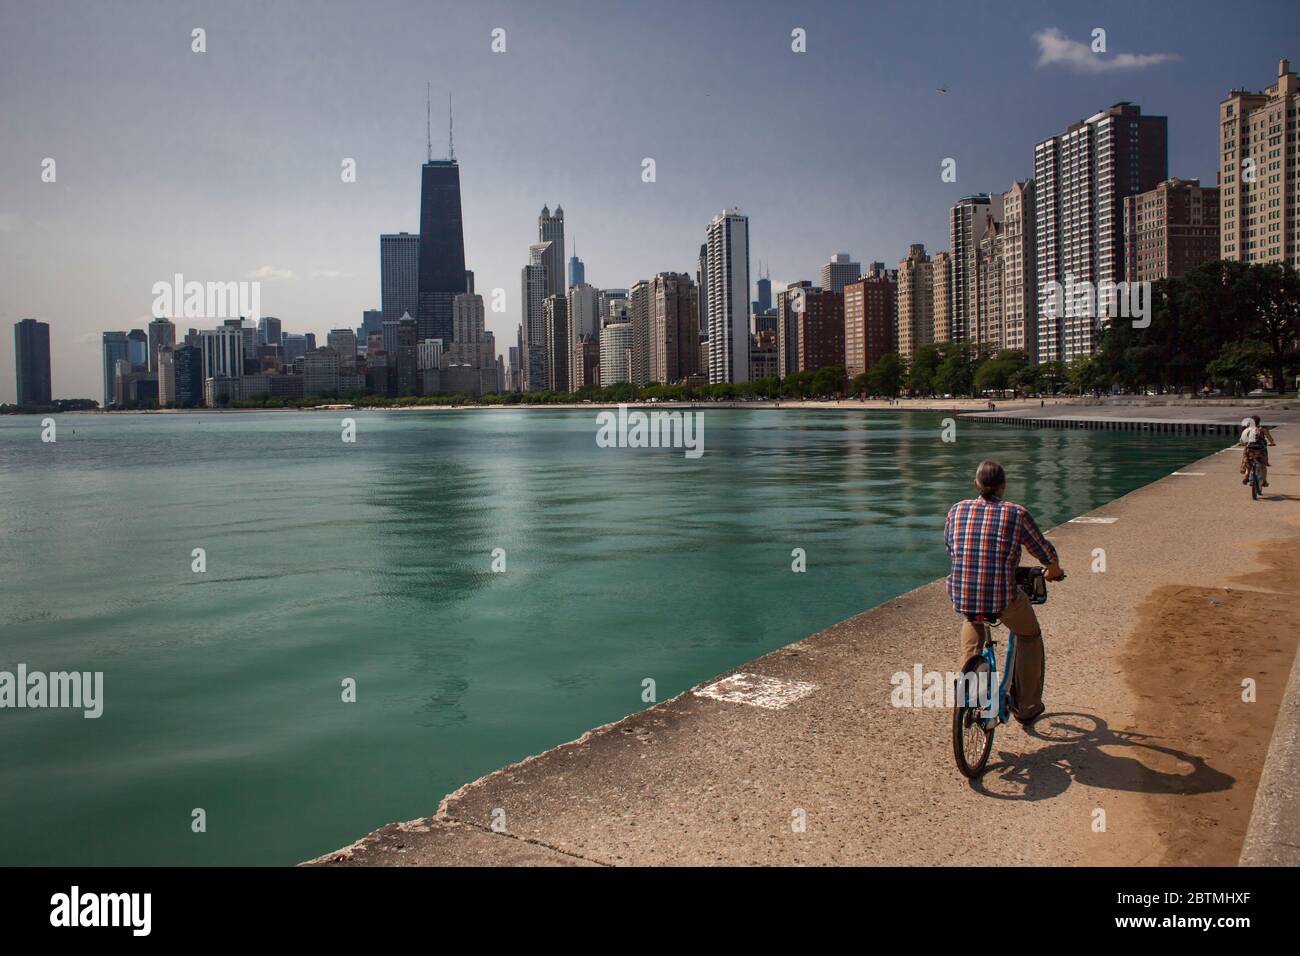 Vue horizontale de deux personnes à vélo près du lac Michigan, avec les gratte-ciel de Chicago en arrière-plan, North Ave Beach, Illinois, États-Unis Banque D'Images